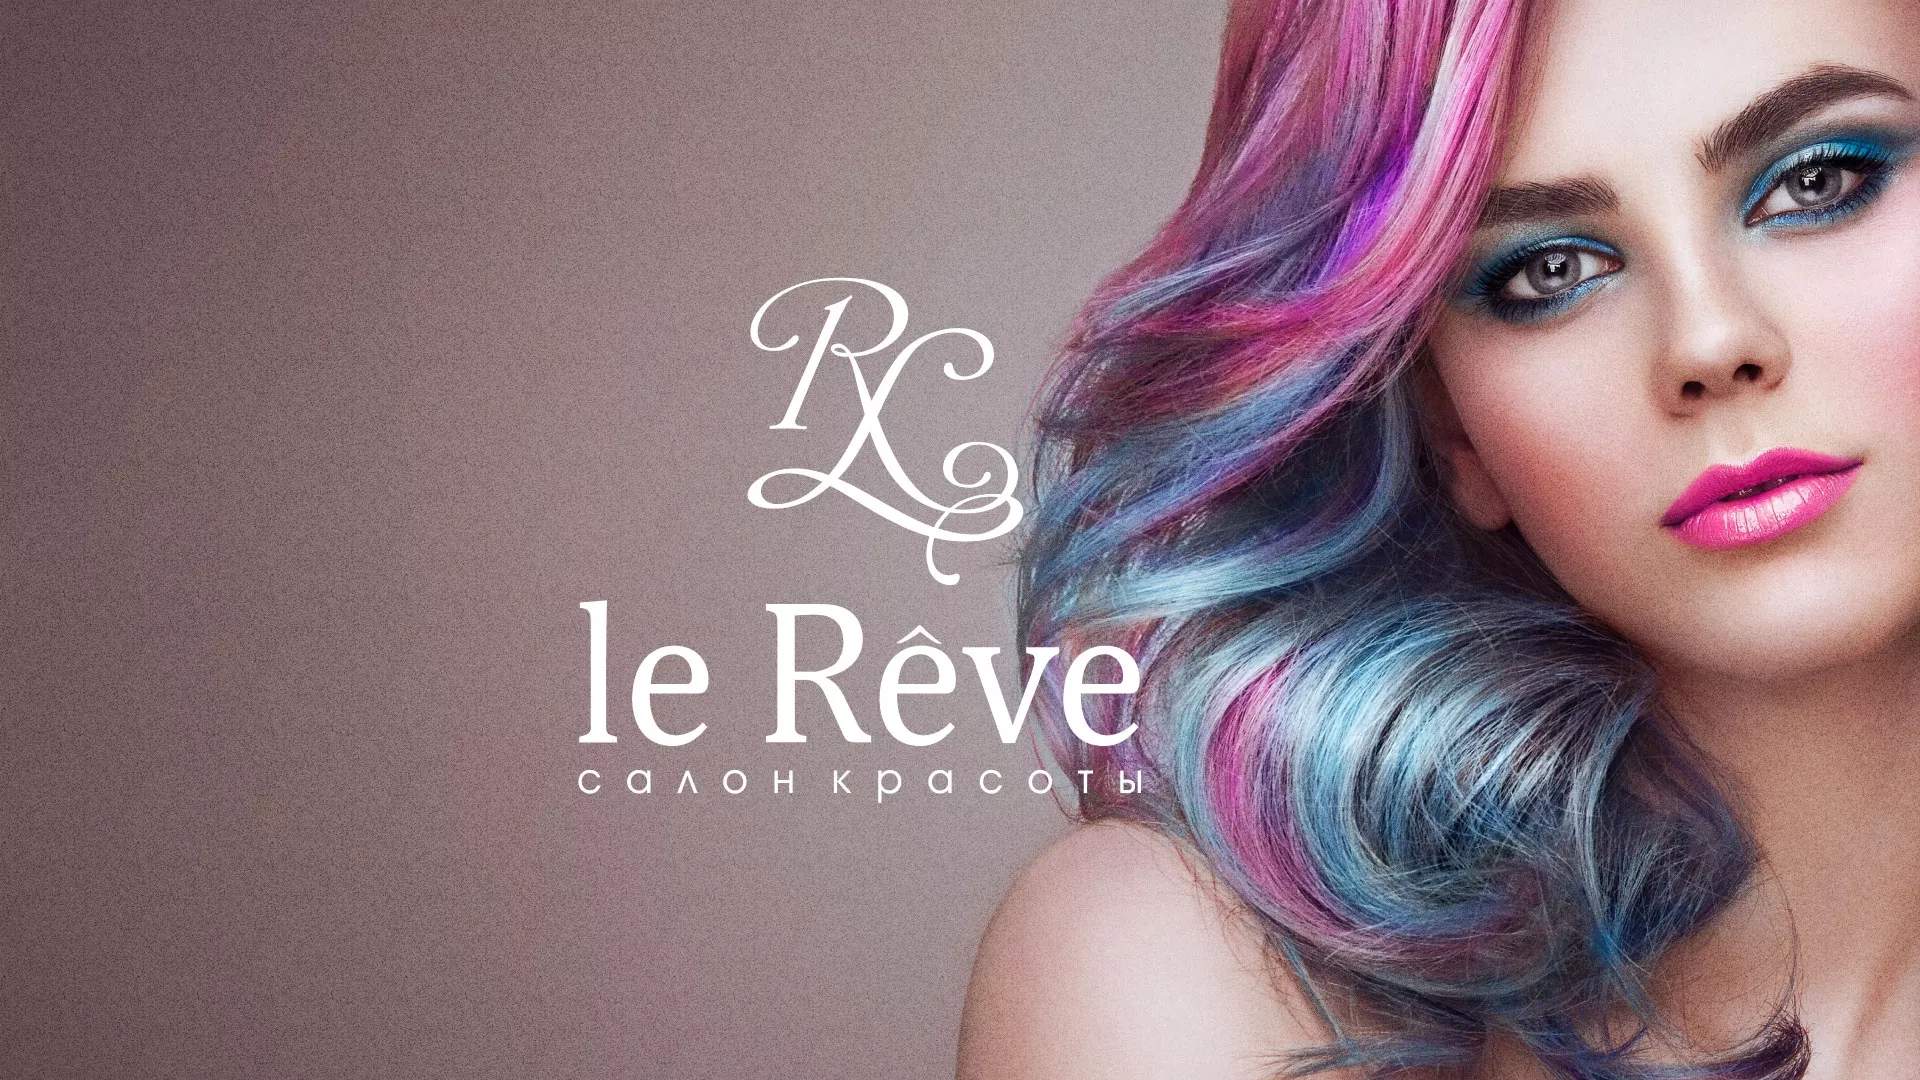 Создание сайта для салона красоты «Le Reve» в Фатеже